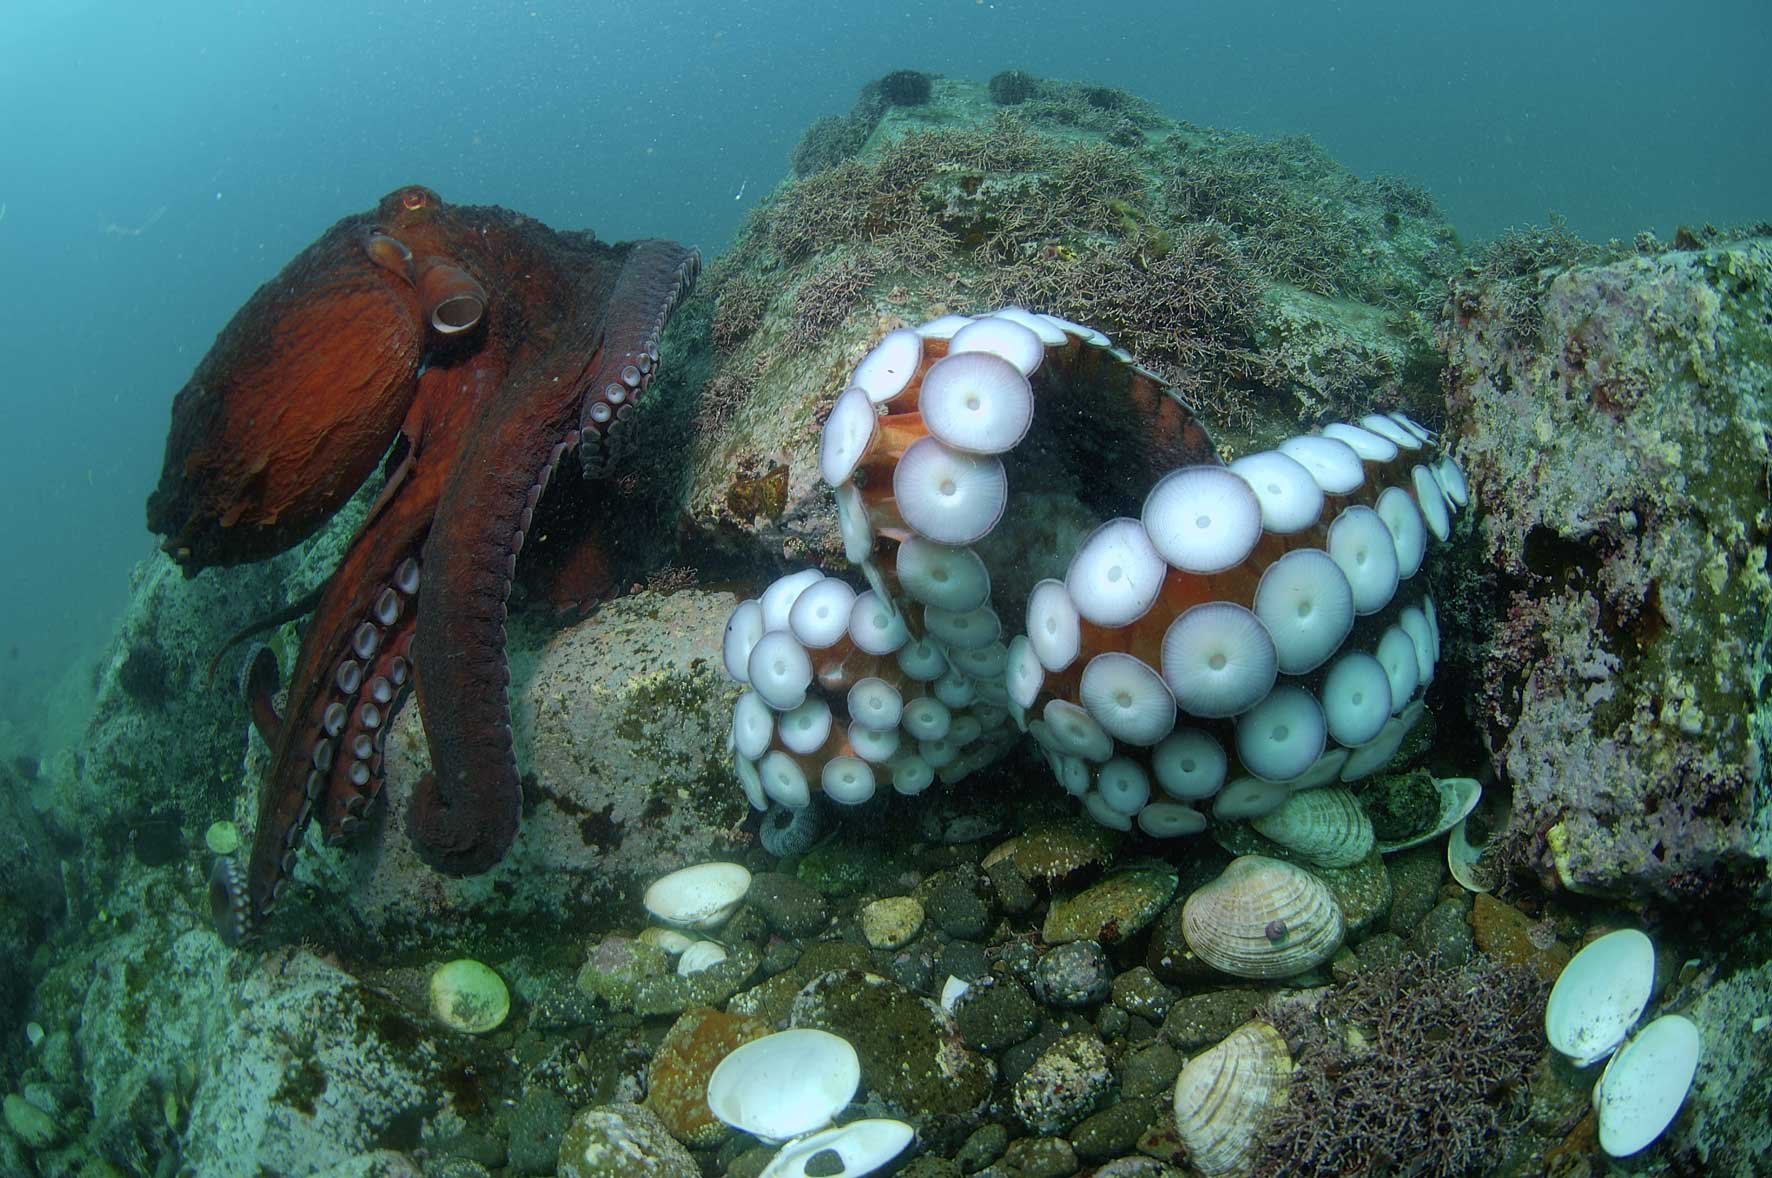 Десятиногий моллюск. Спрут головоногий моллюск. Осьминог Дофлейна гигантский. Самый большой головоногий моллюск в мире. Беспозвоночные морские животные.